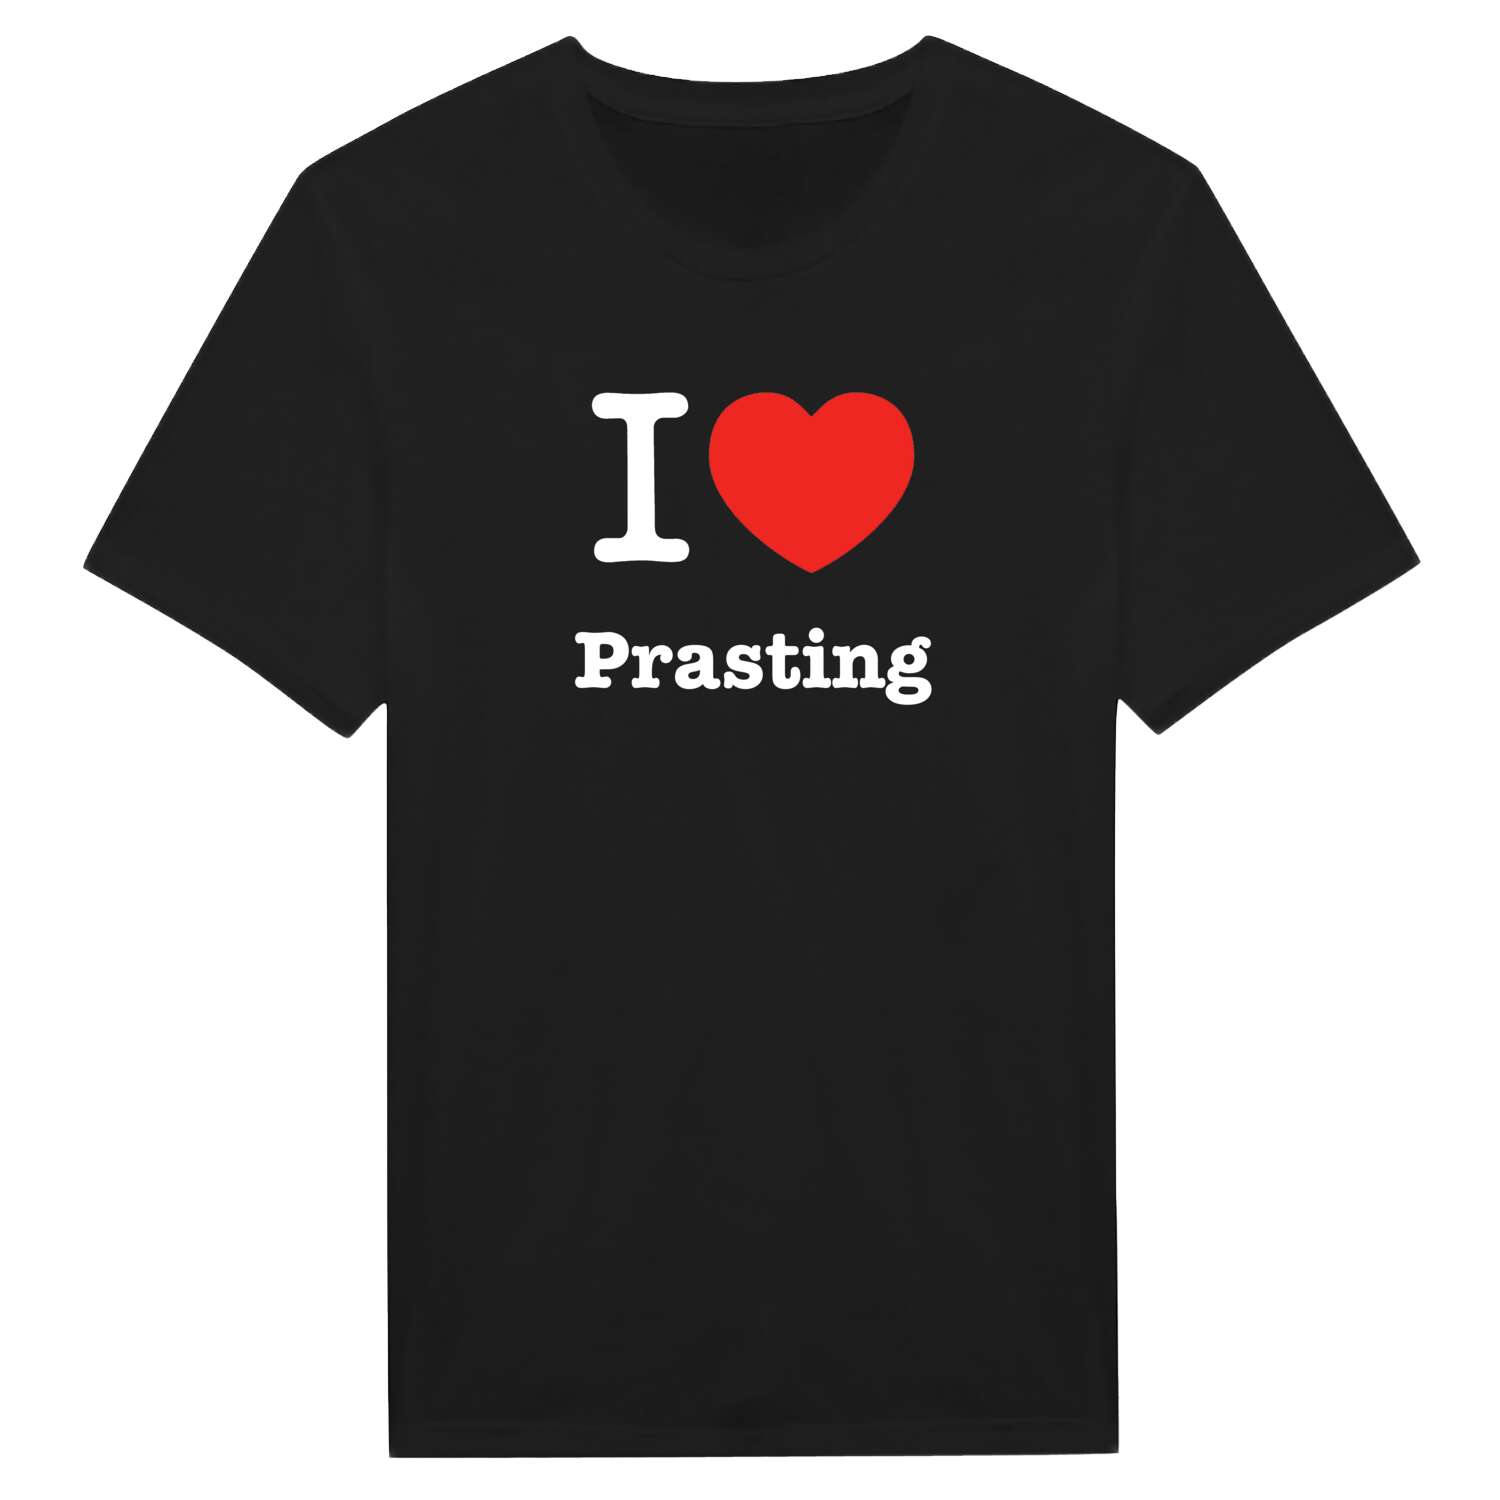 Prasting T-Shirt »I love«